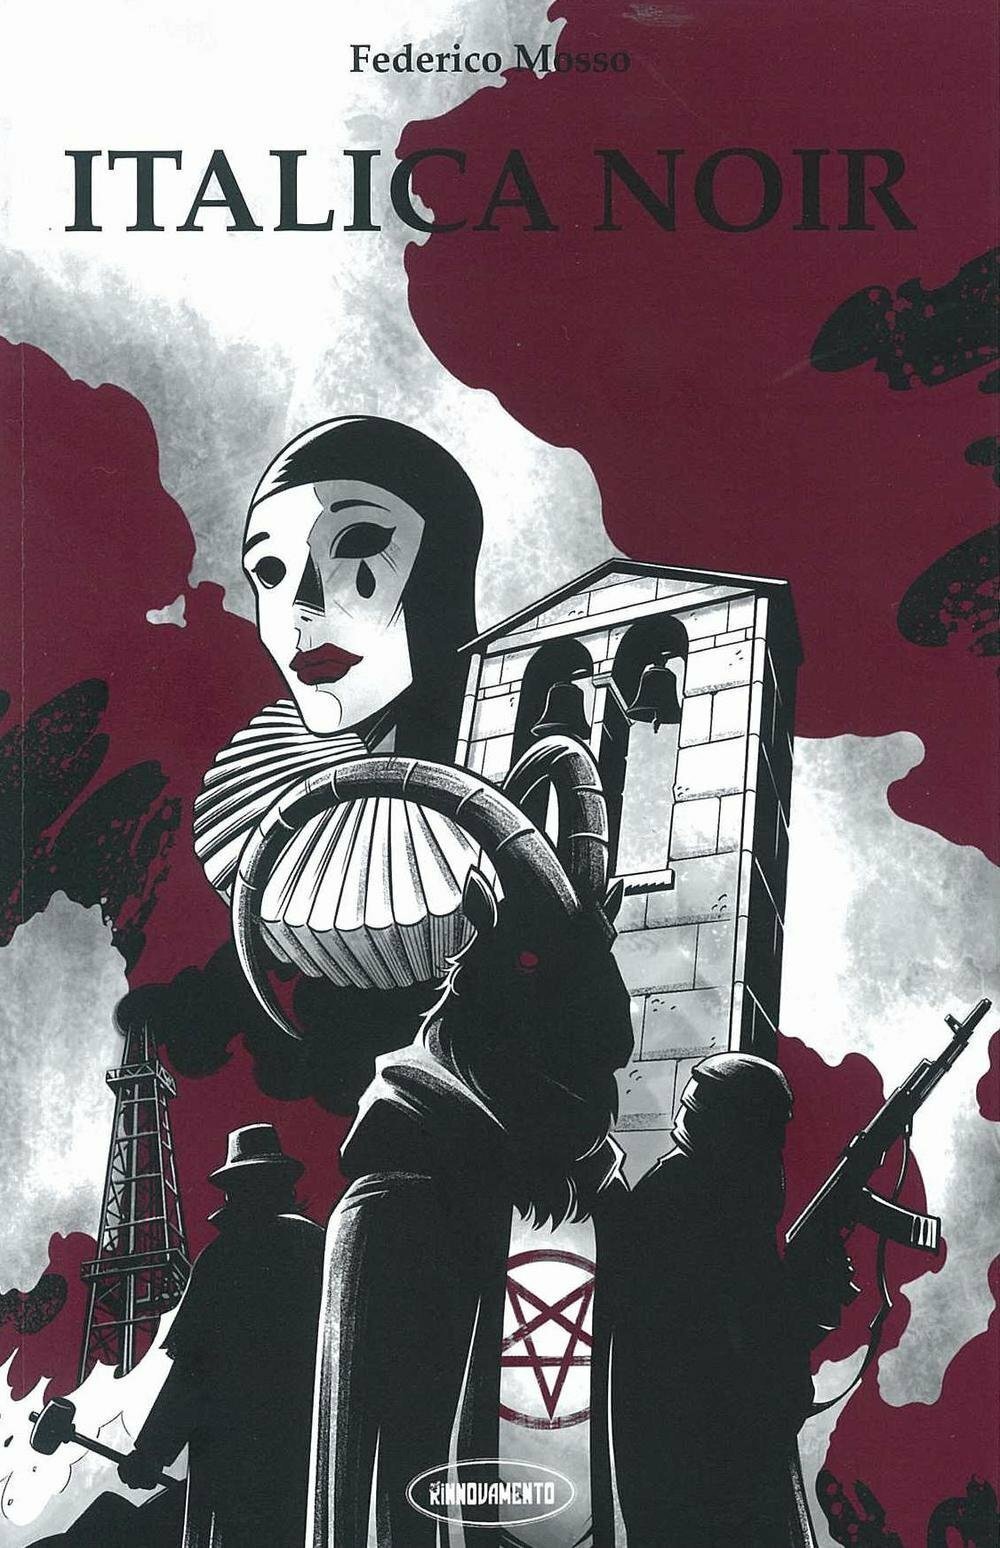 L'immagine copertina della raccolta di saggi Italica Noir da cui è stata tratta la miniserie